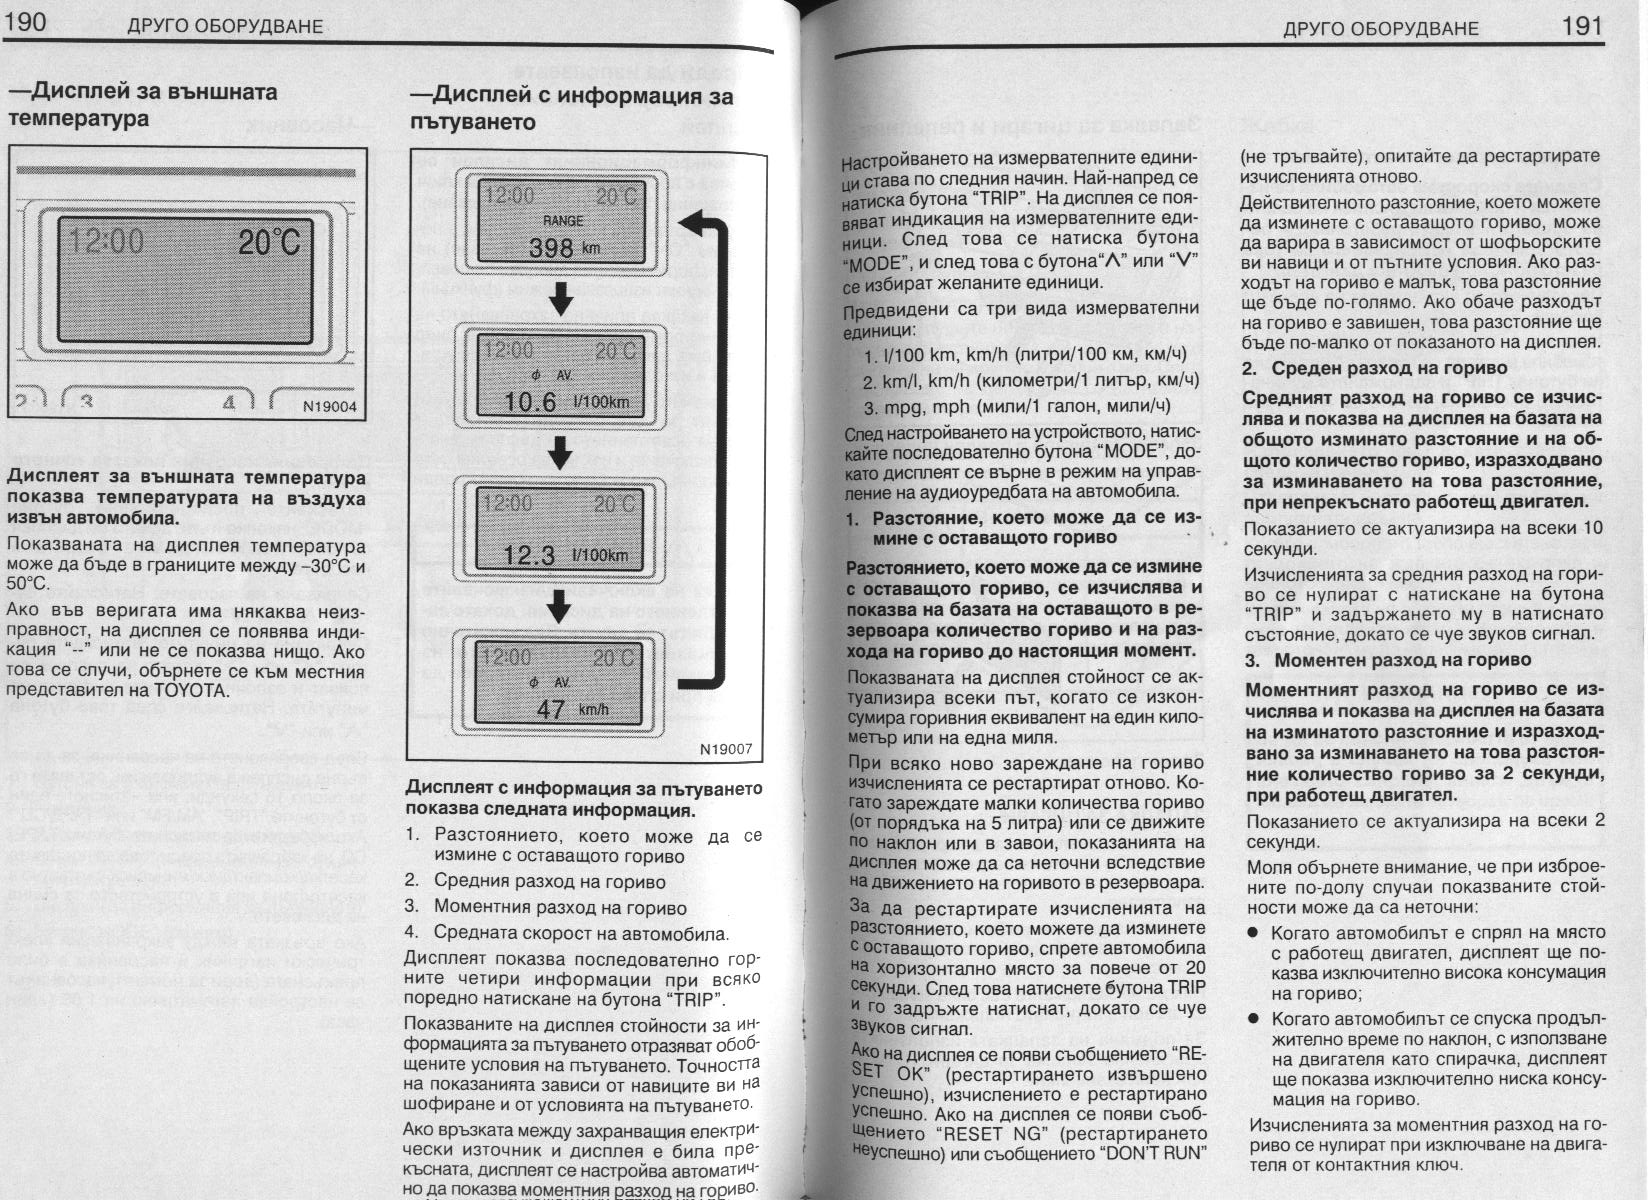 BG-user_manual_Avensis_2001_Page_190.jpg